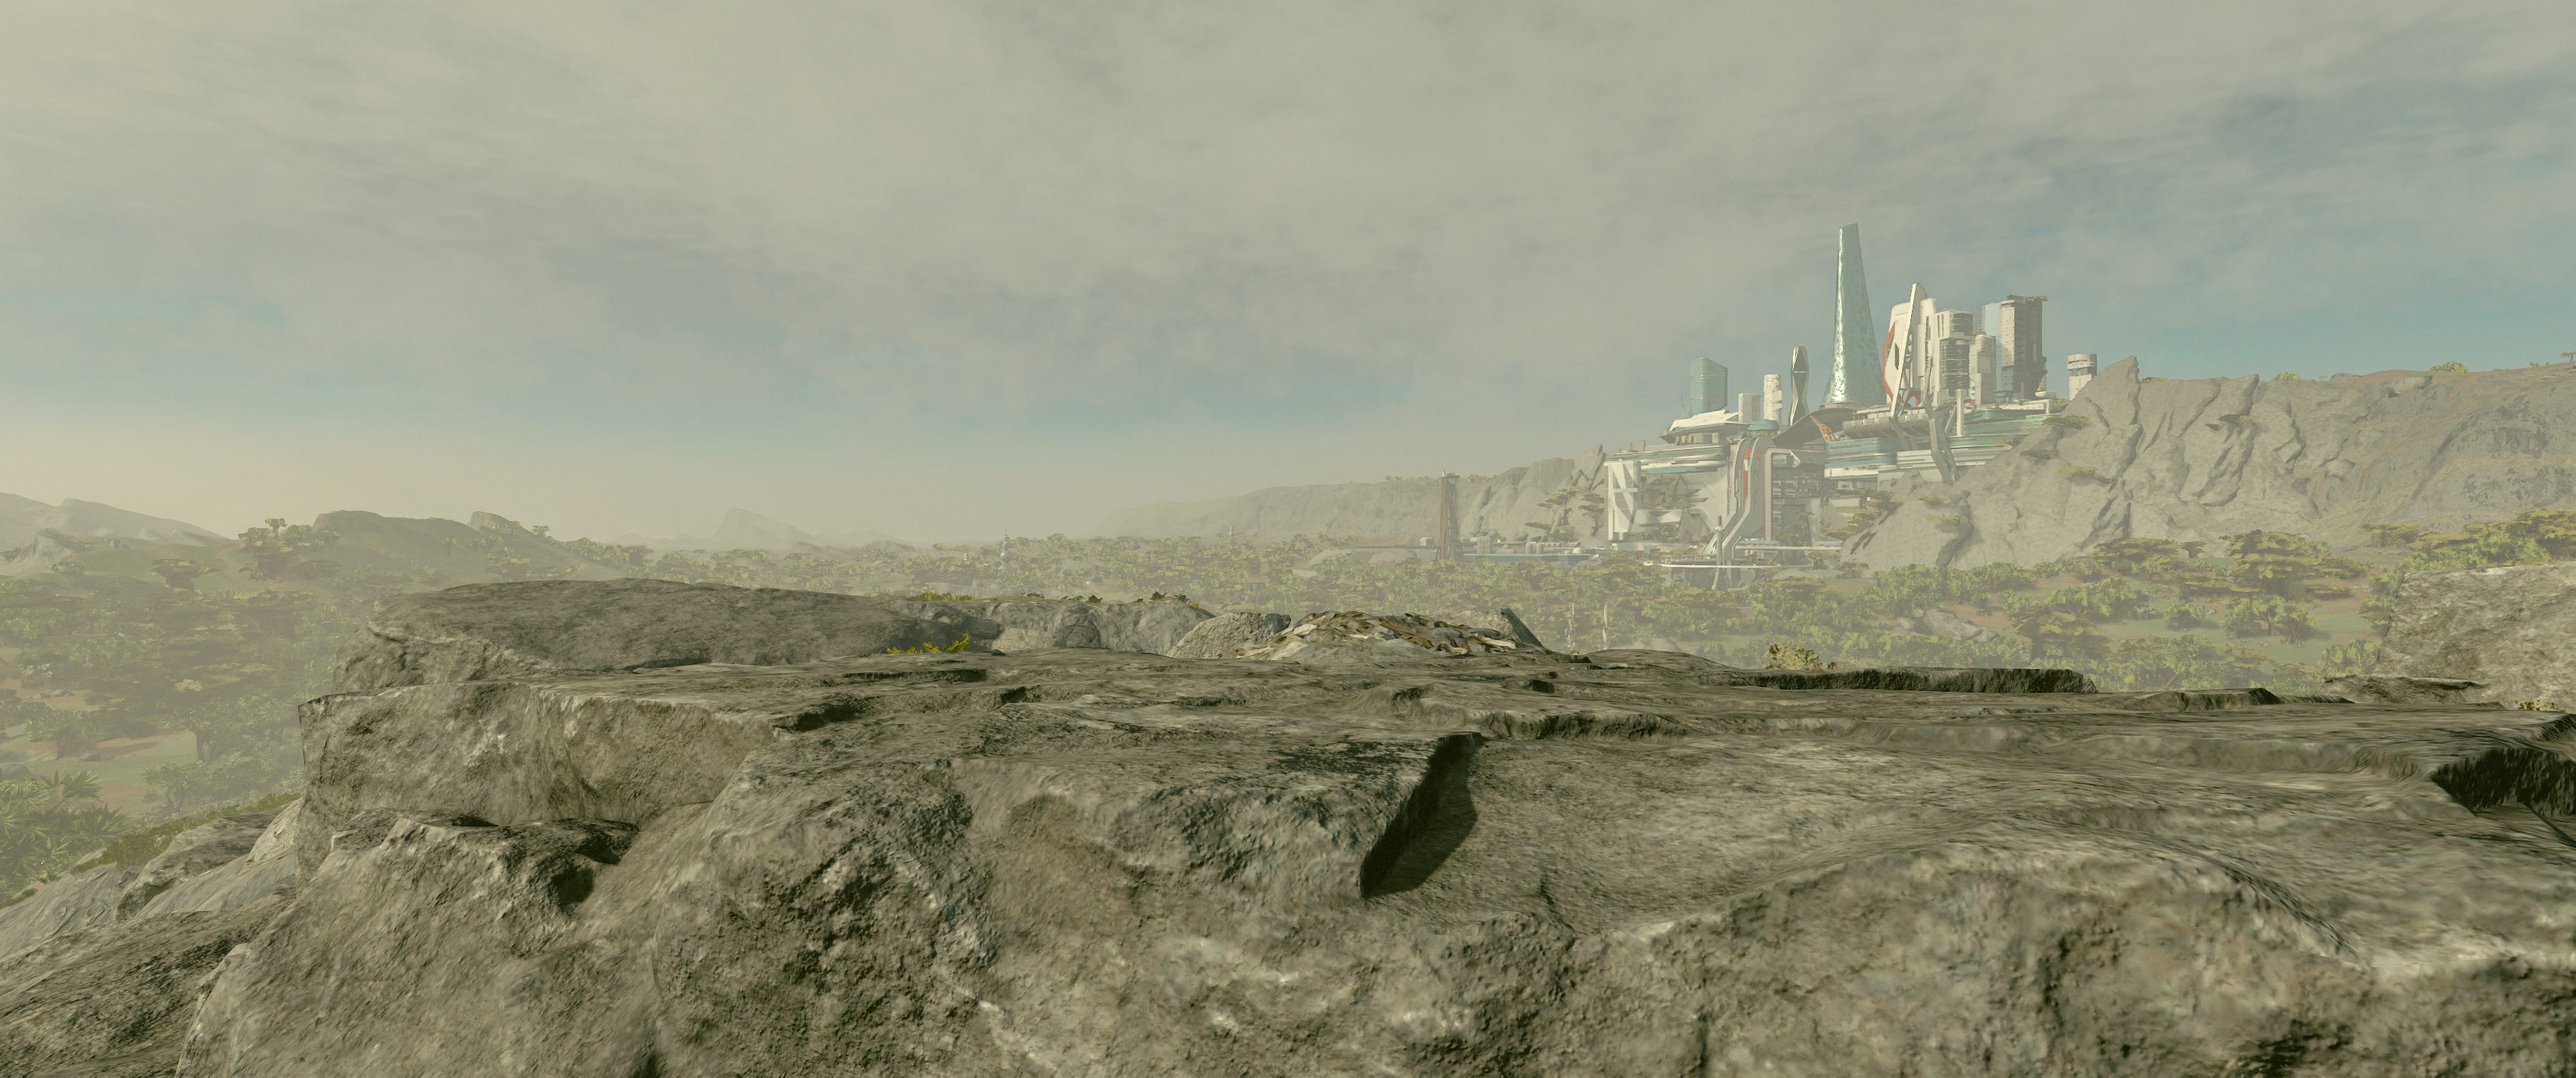 Eine Felslandschaft, im Hintergrund die futuristische Skyline einer Stadt